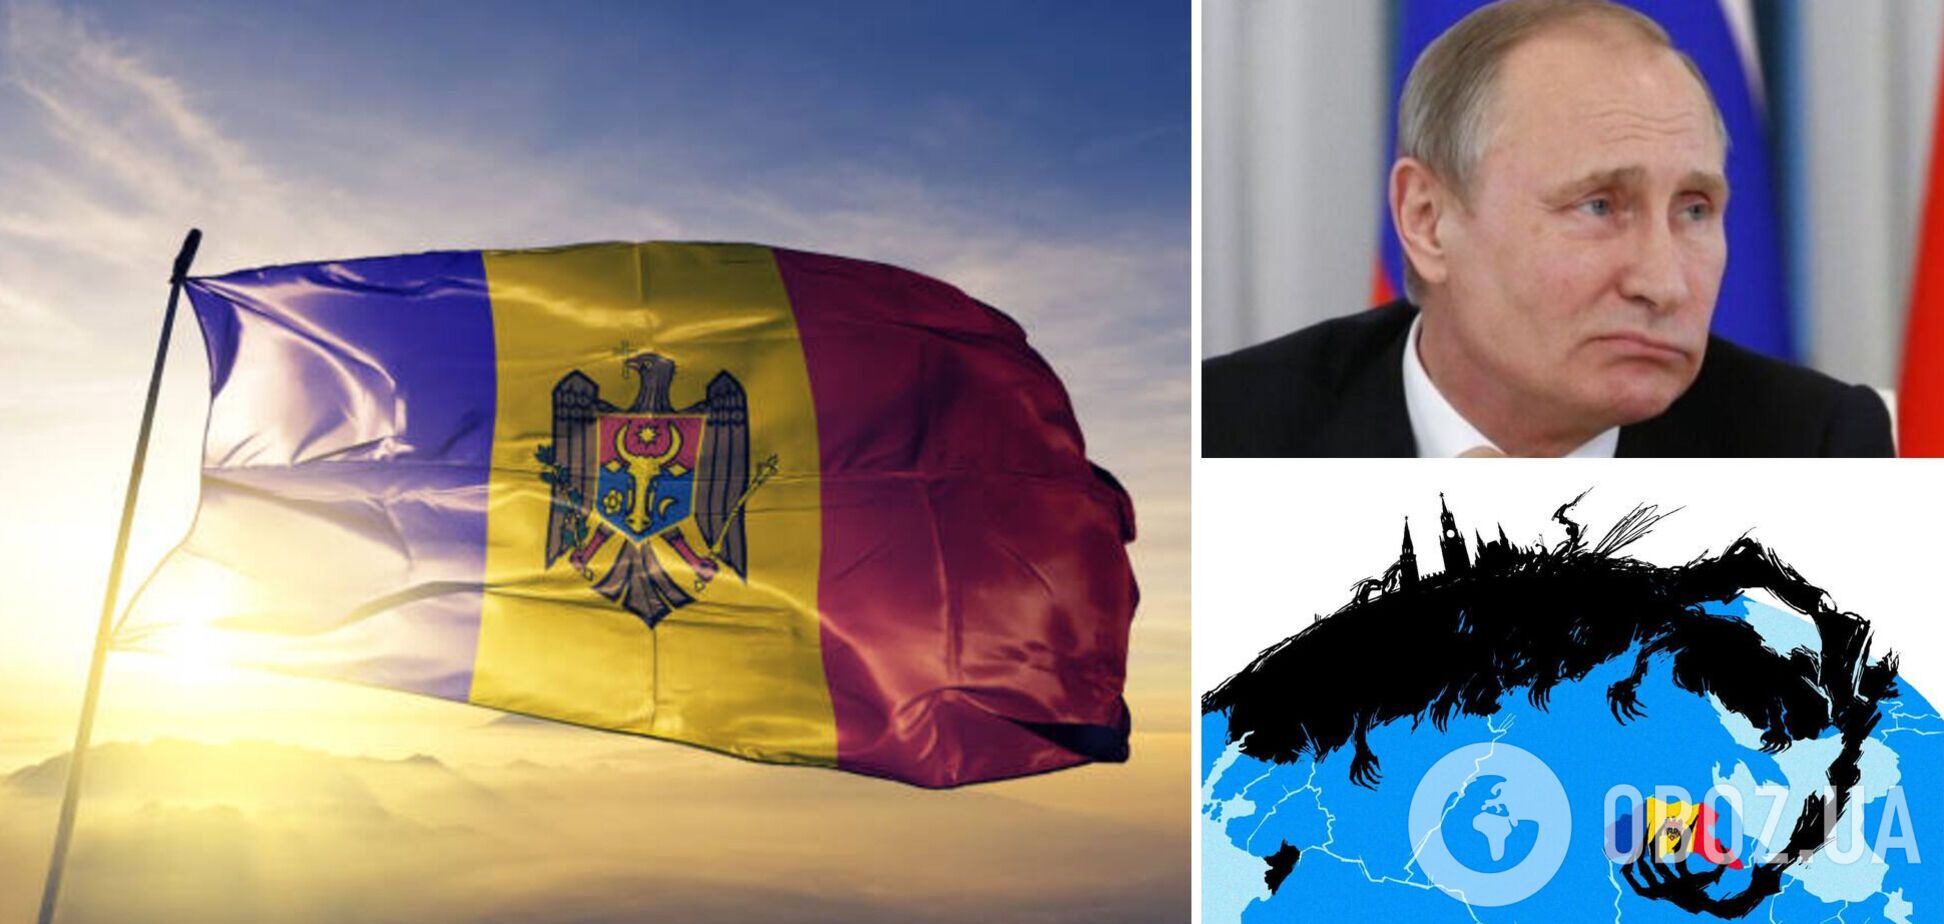 Кремль собирался усилить влияние на Молдову, но его планы рушатся: СМИ обнародовали громкое расследование